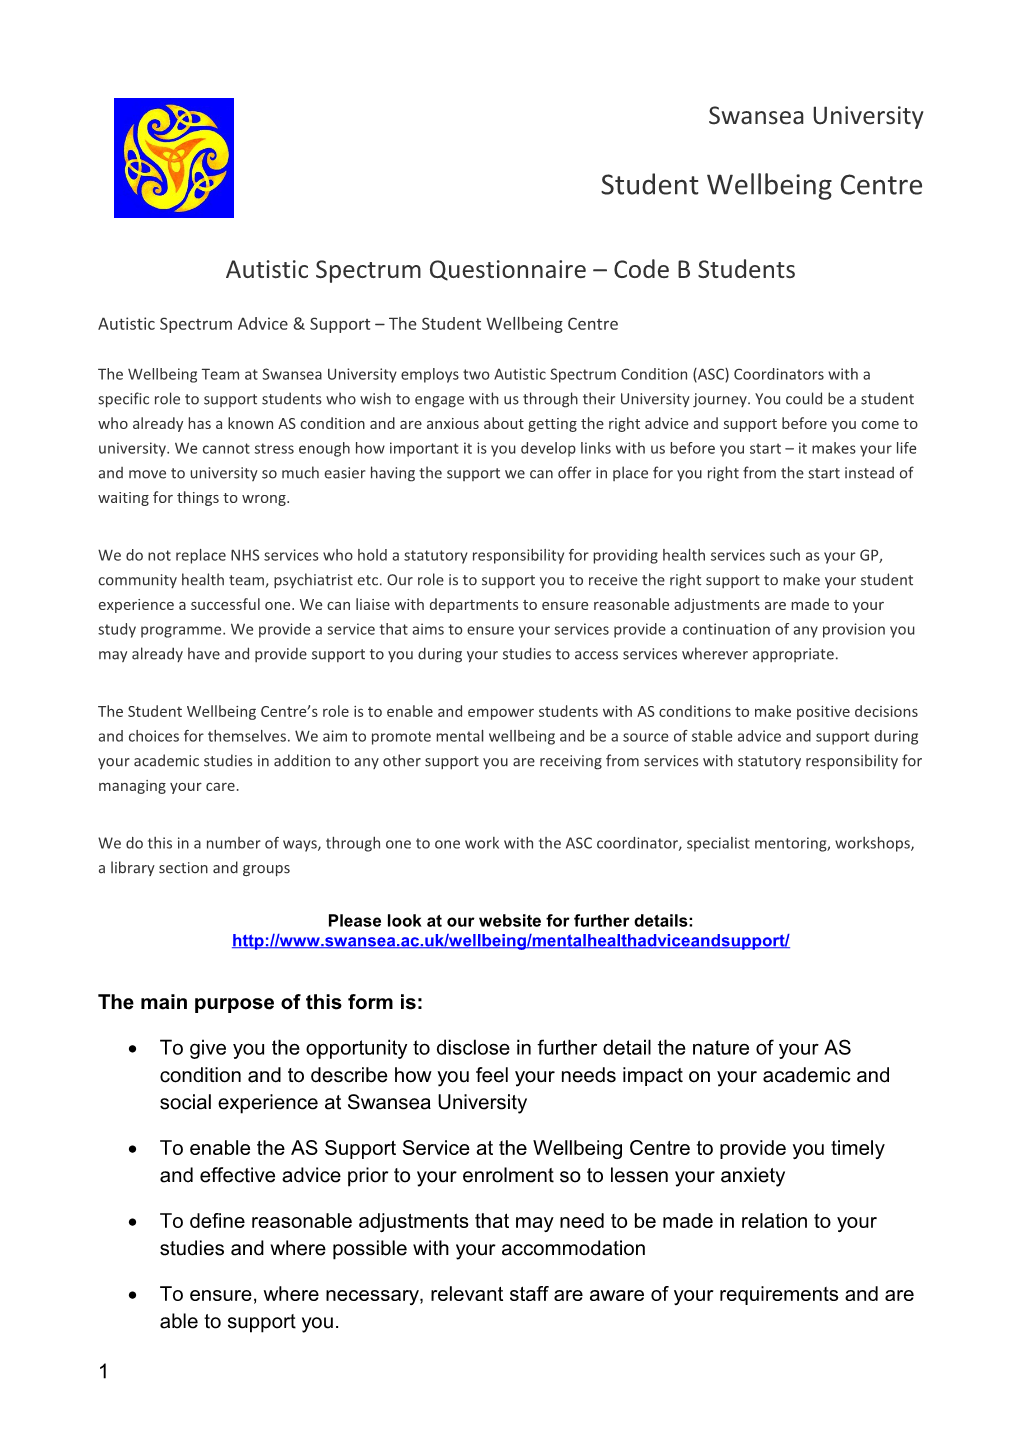 Autistic Spectrum Questionnaire Code B Students